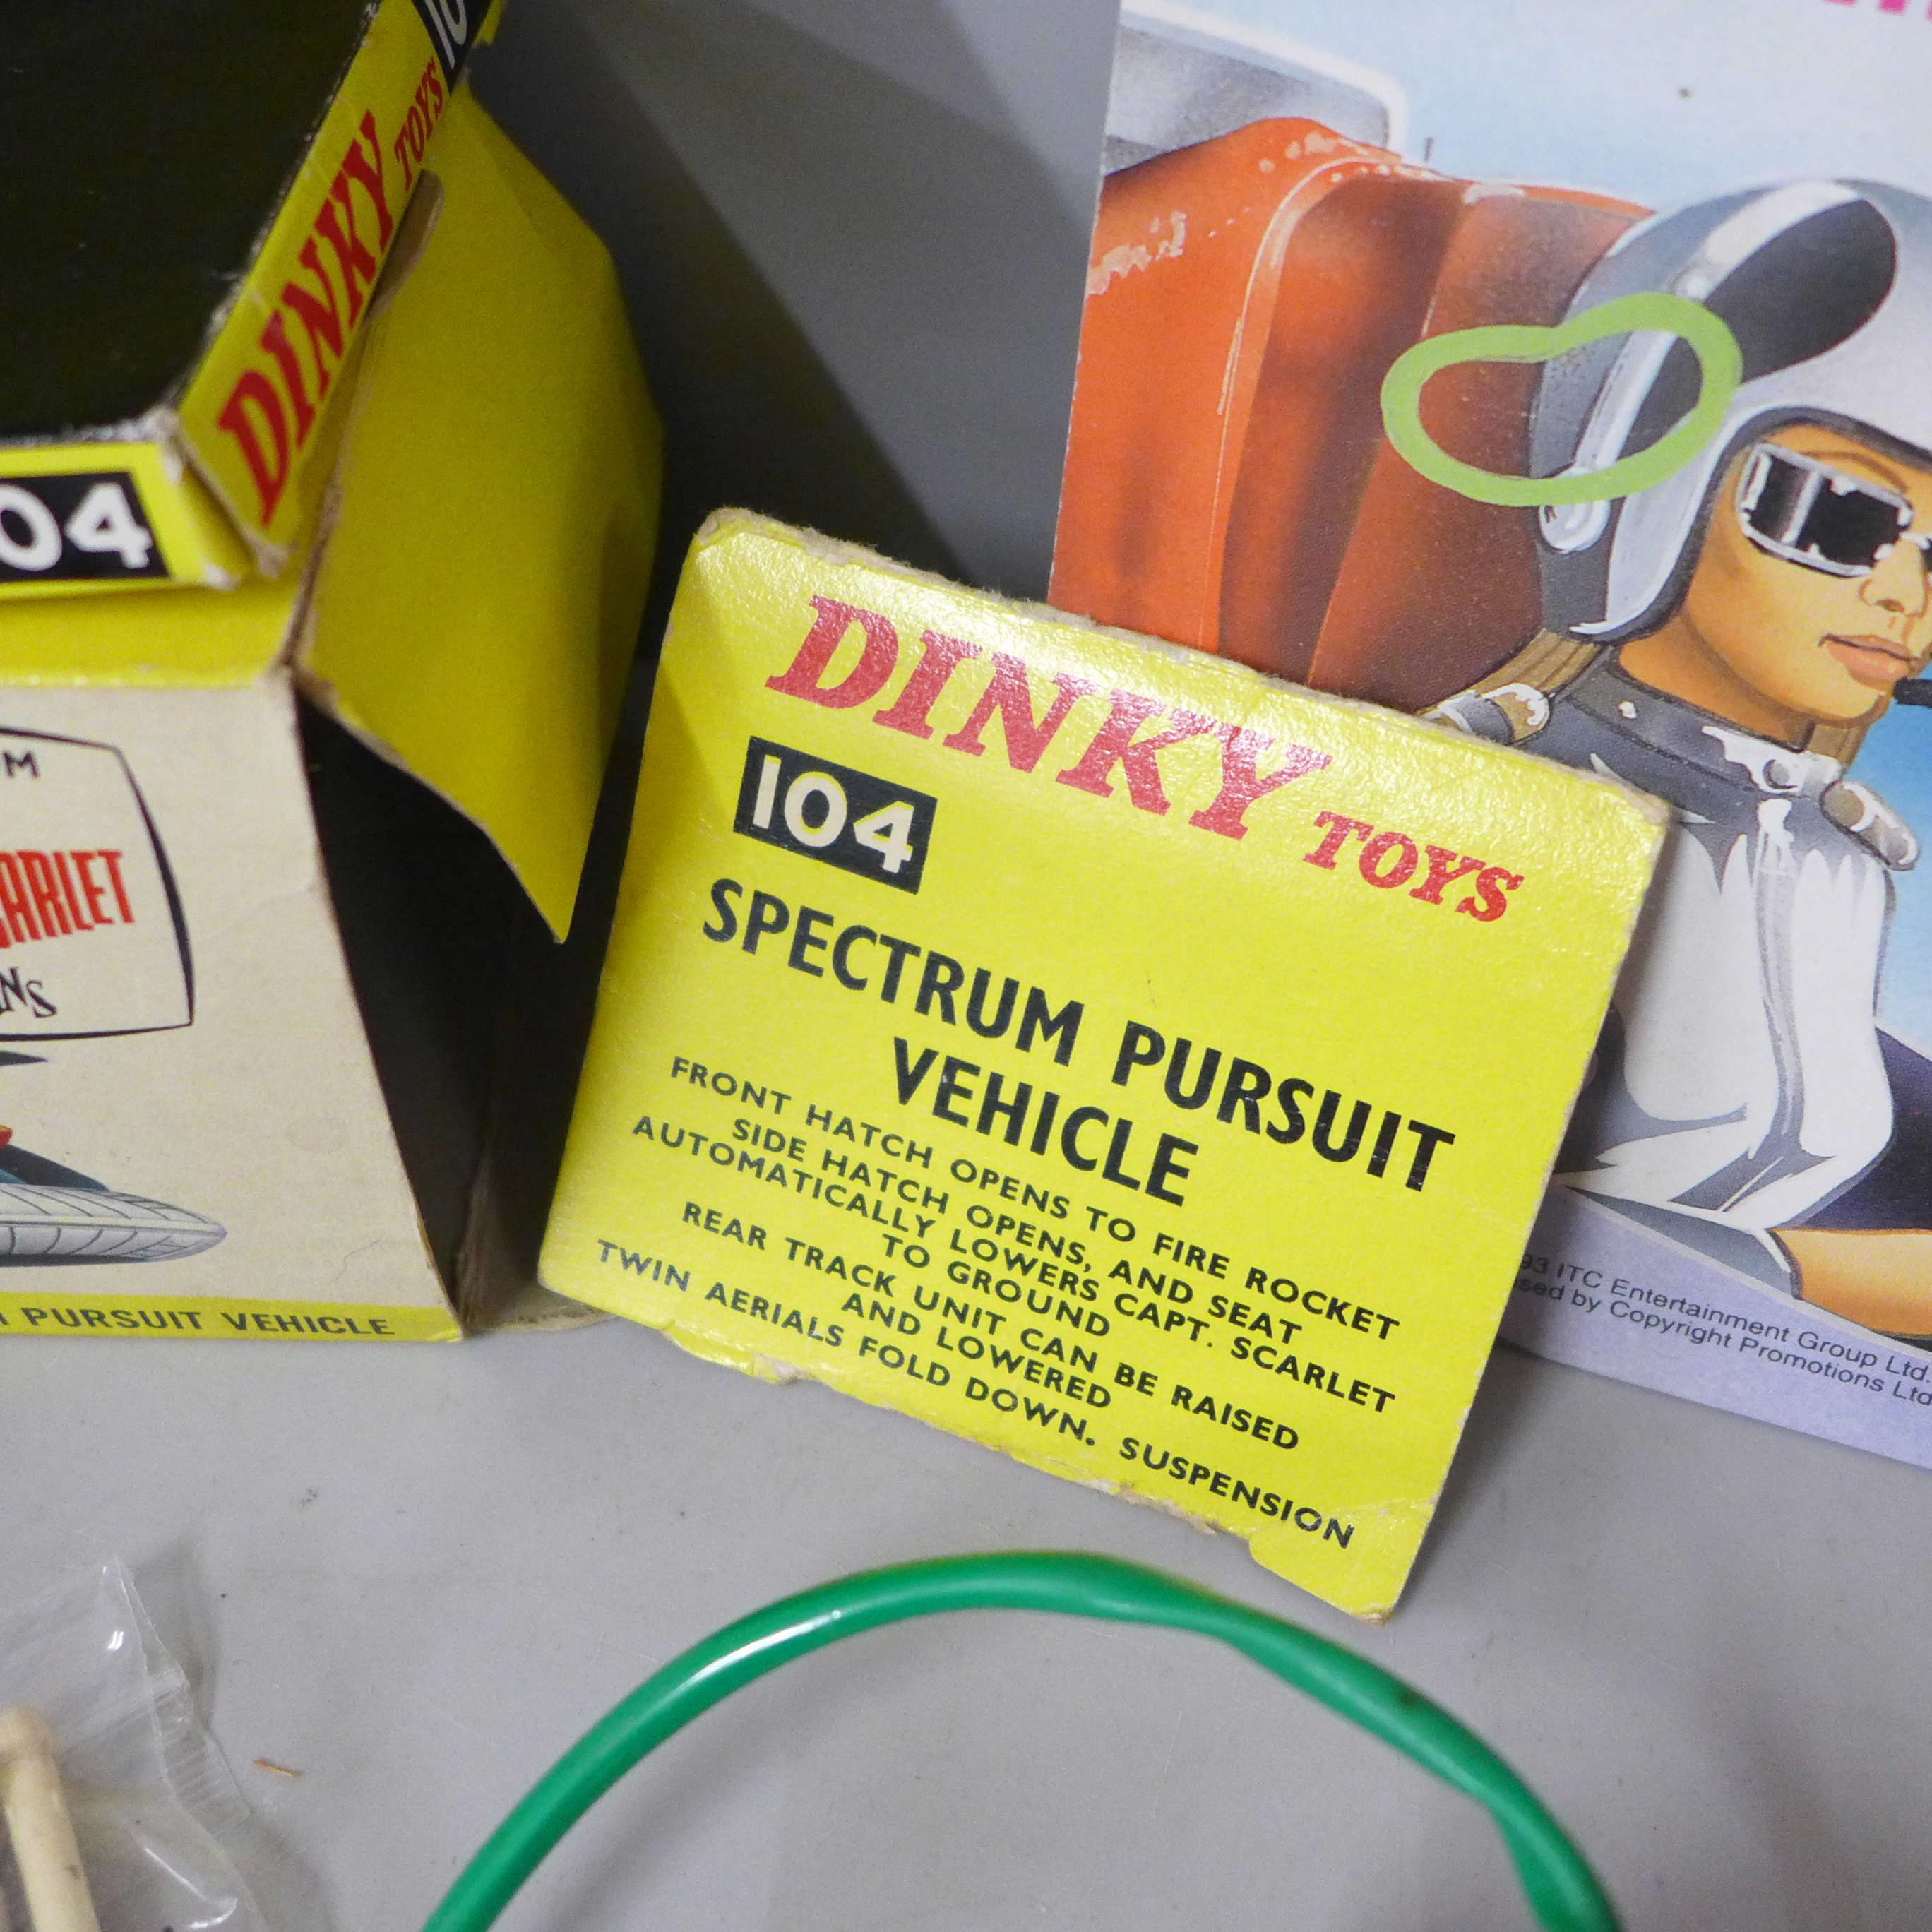 A die-cast Schuco Racer 1036/1, Dinky Toys Captain Scarlet Spectrum Pursuit Vehicle, box a/f, - Bild 6 aus 7